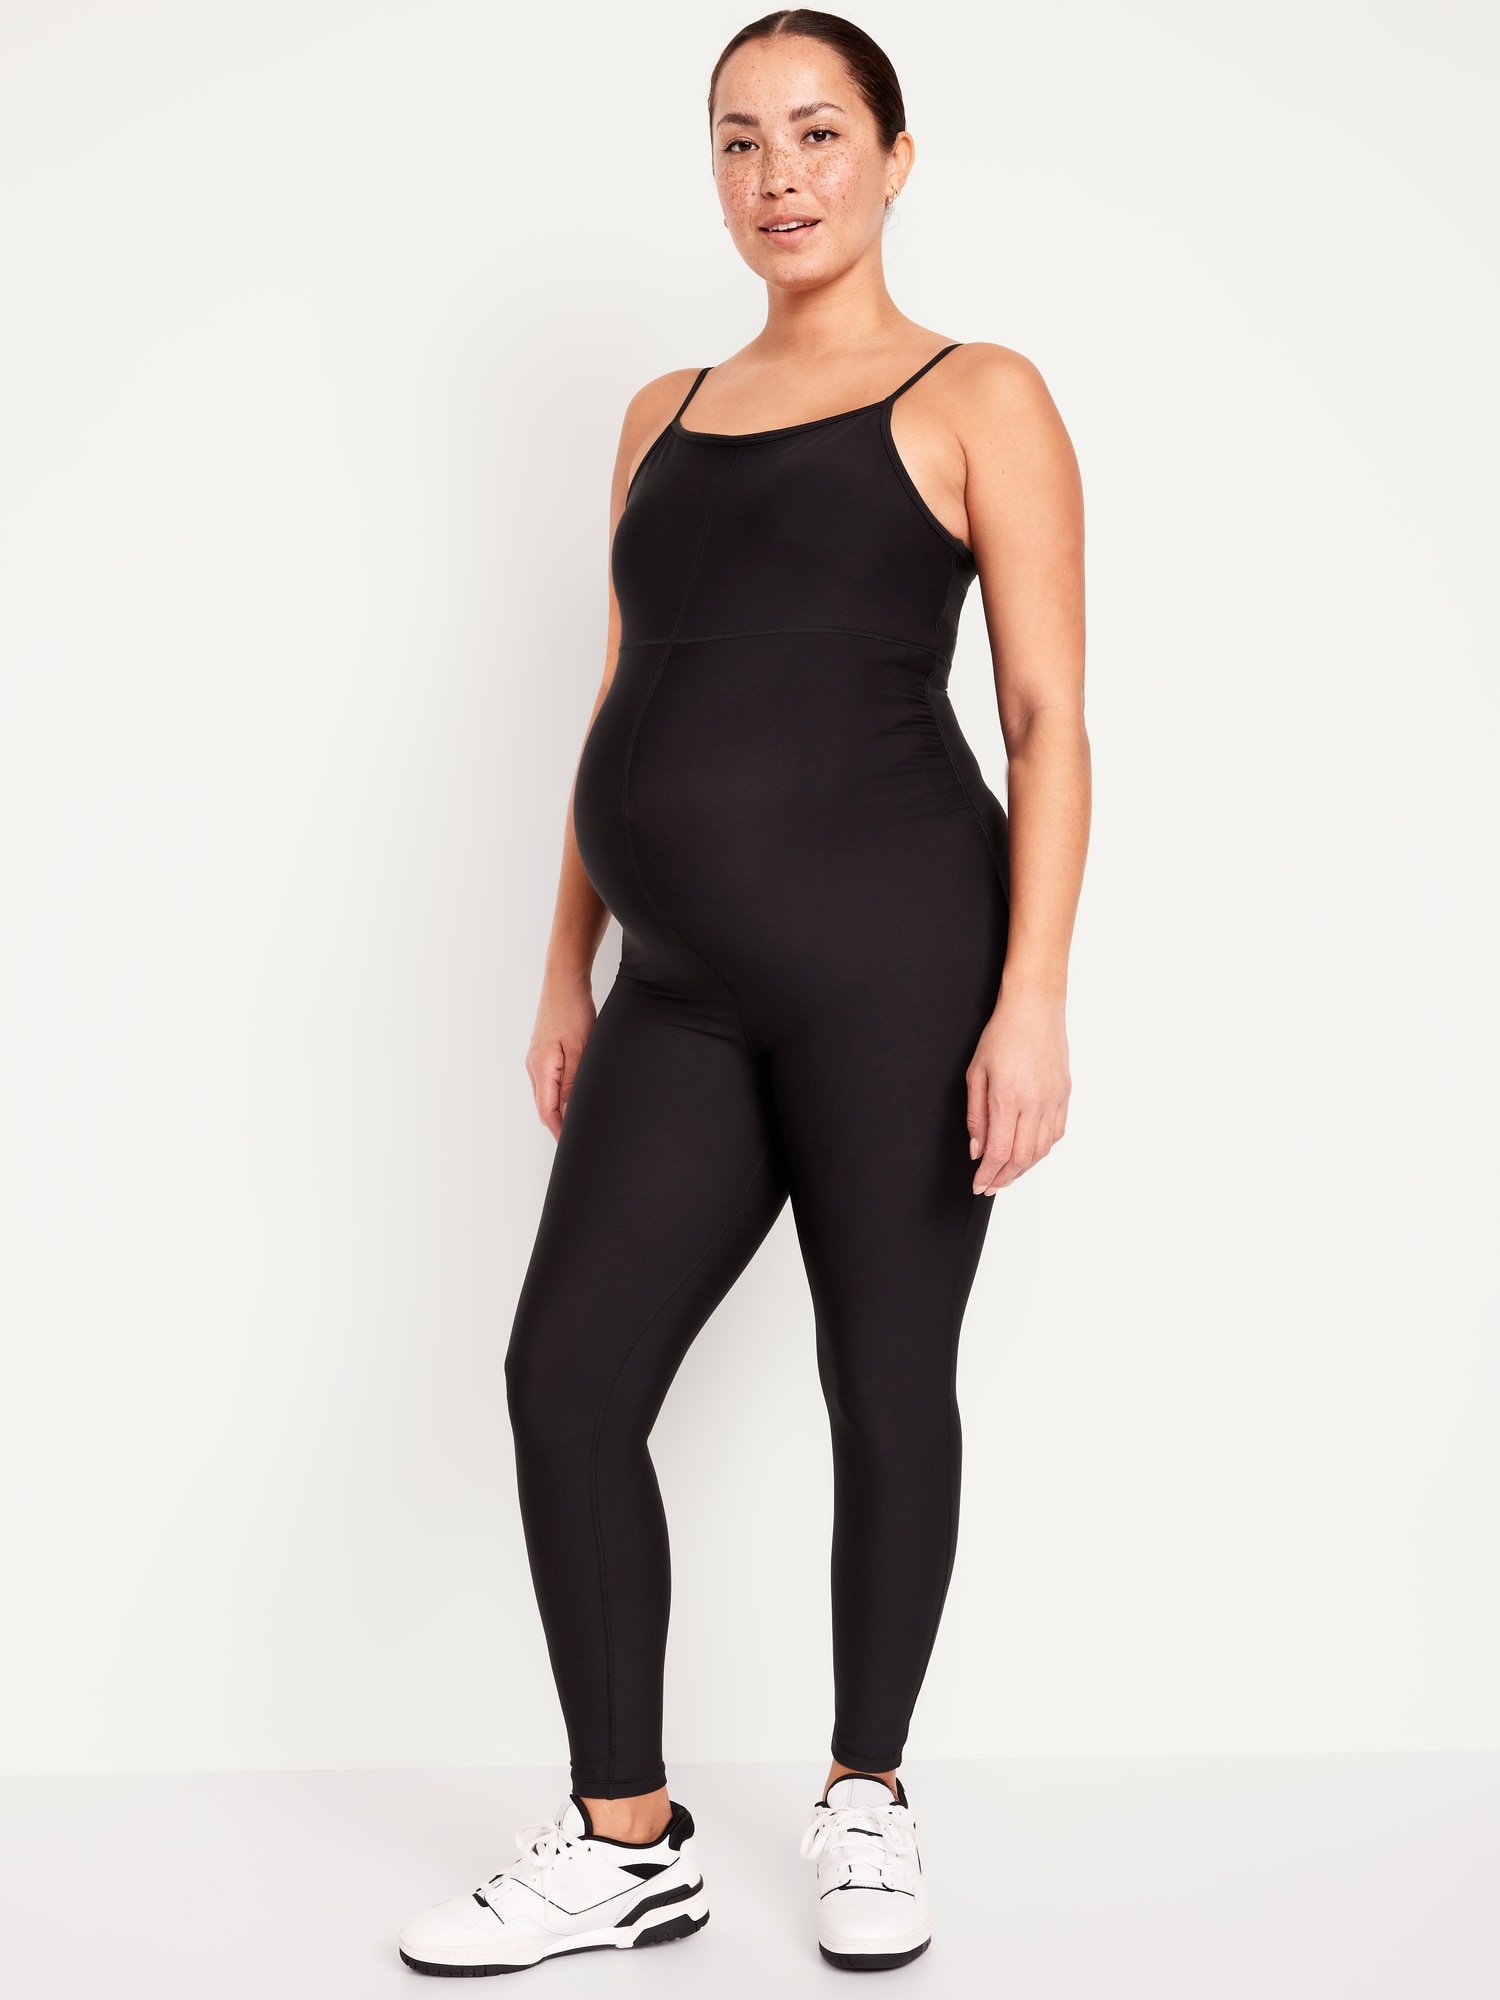 Lataly Women's Maternity Bodysuit Pregnancy Jumpsuit Romper Shapewear Tank  Top Leggings